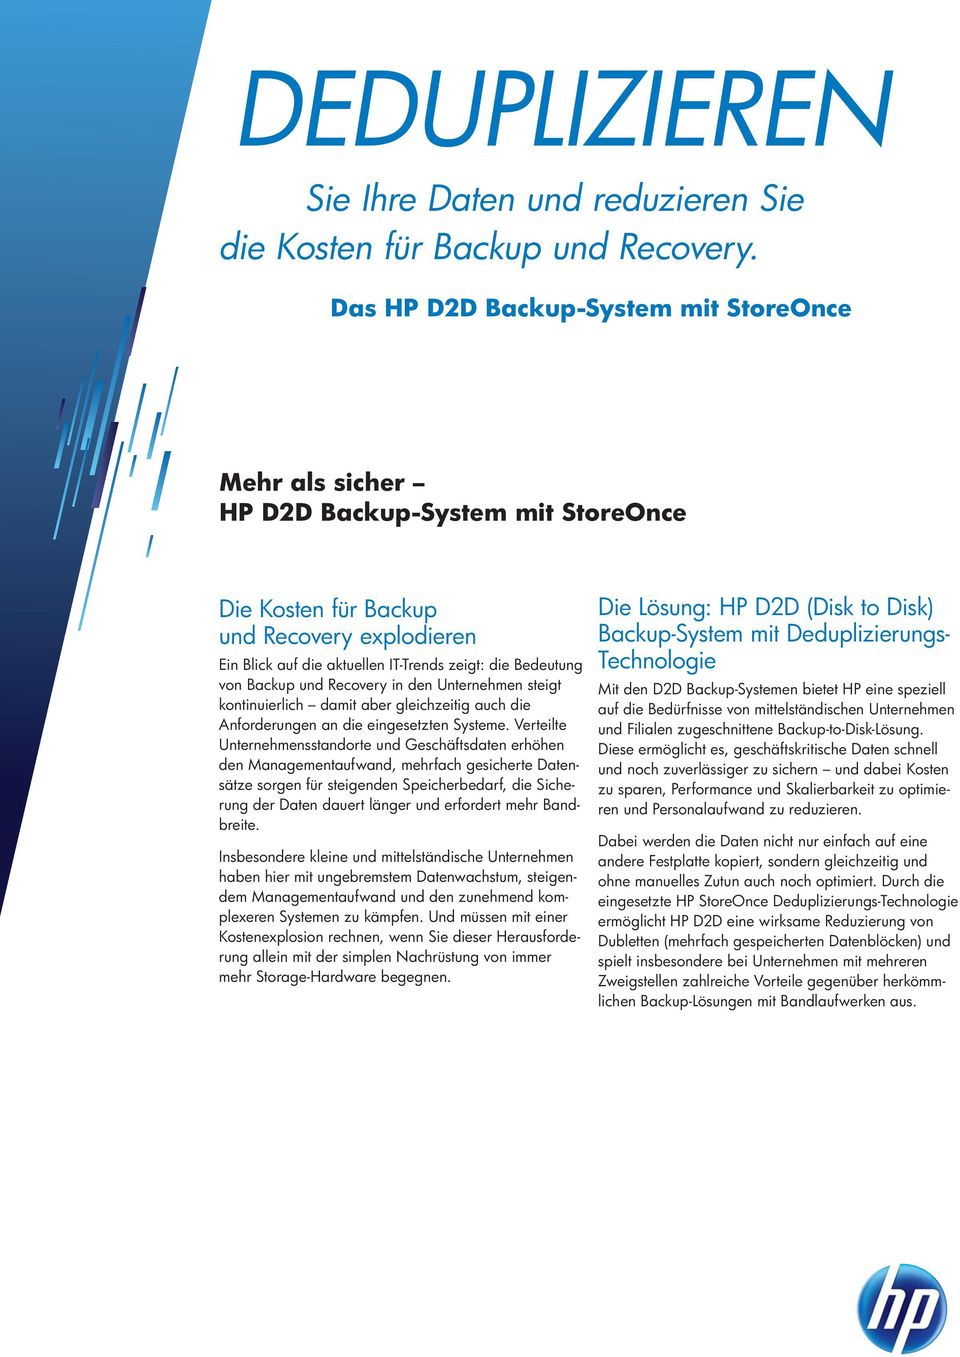 Backup und Recovery in den Unternehmen steigt kontinuierlich damit aber gleichzeitig auch die Anforderungen an die eingesetzten Systeme.